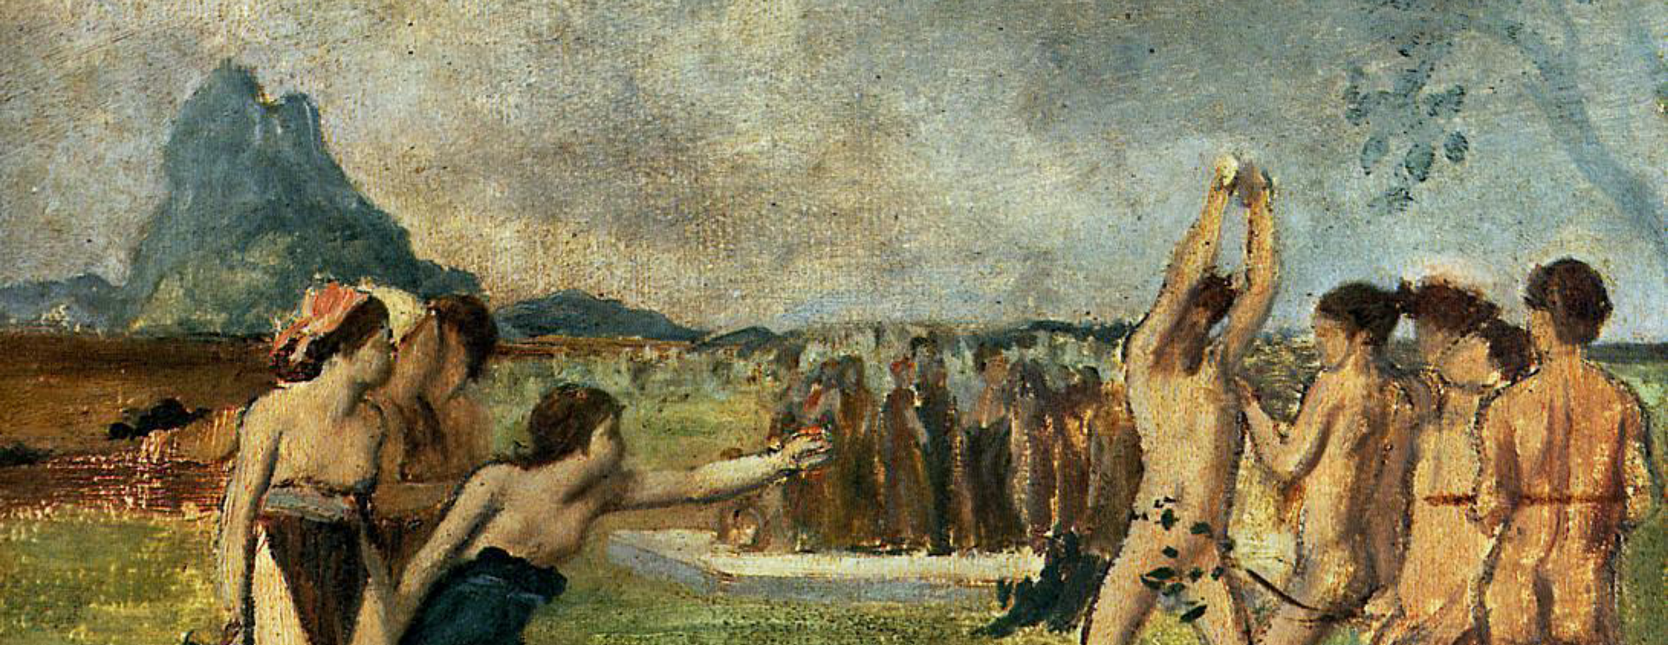 Edgar Degas, “Young Spartans Exercising” (1860)